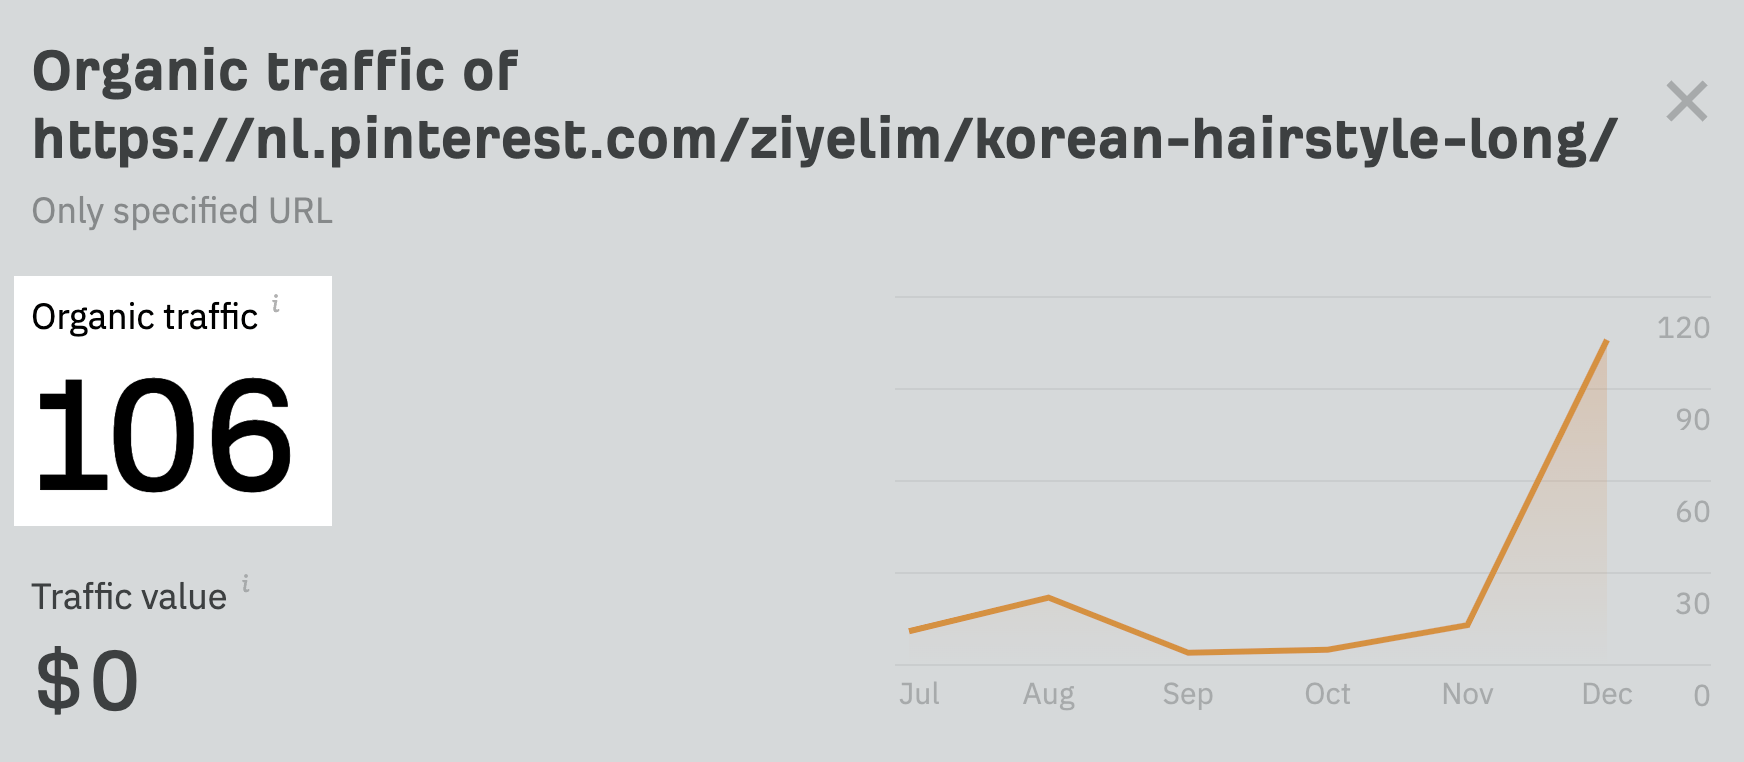 Estimation du trafic de recherche mensuel vers le résultat de premier rang pour "coiffure coréenne pour fille cheveux longs"